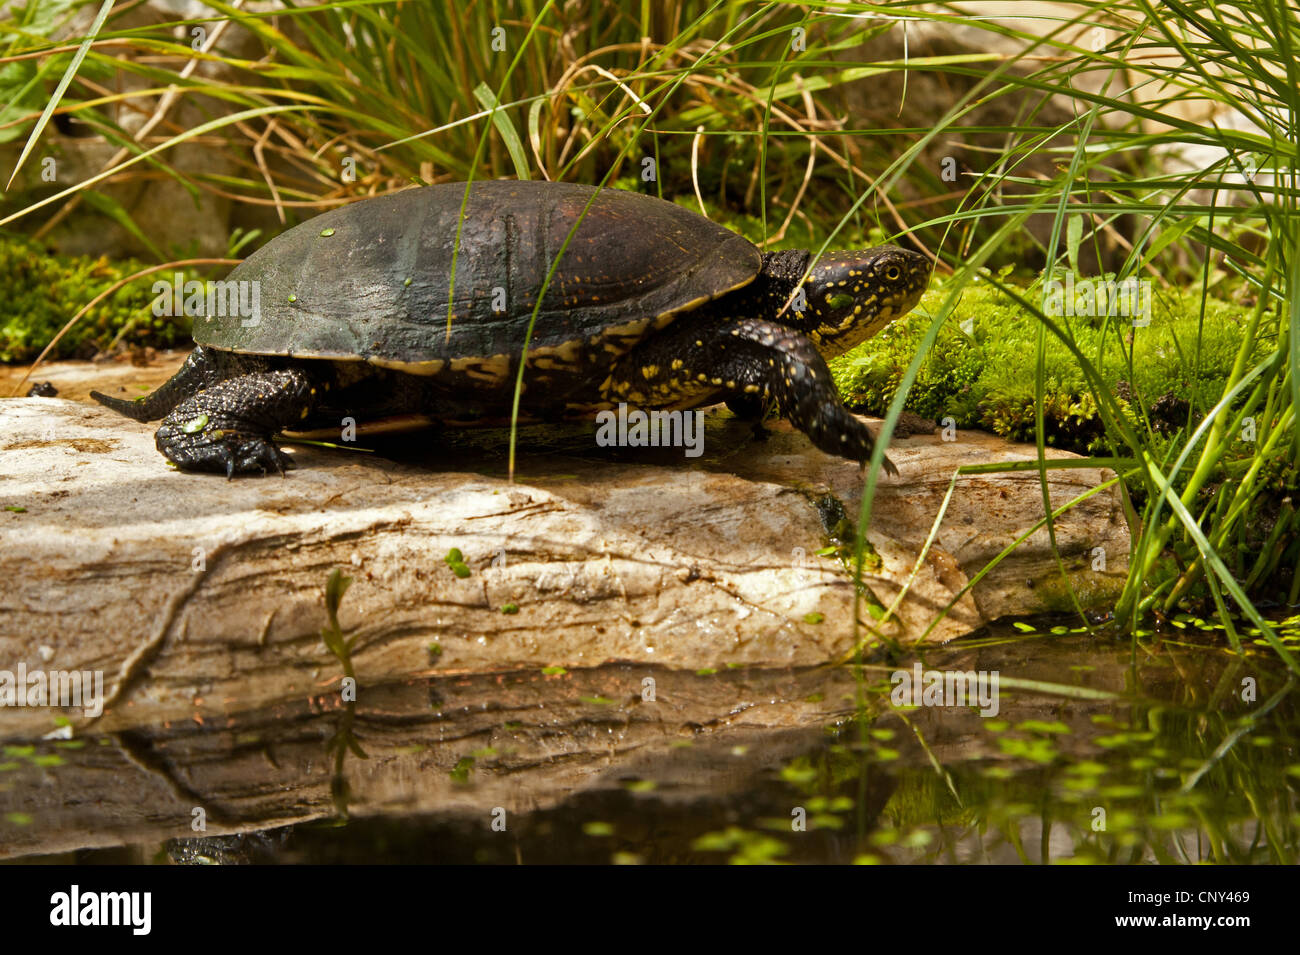 European pond terrapin, European pond turtle, European pond tortoise (Emys orbicularis), sunbathing on stone, Croatia, Istria Stock Photo